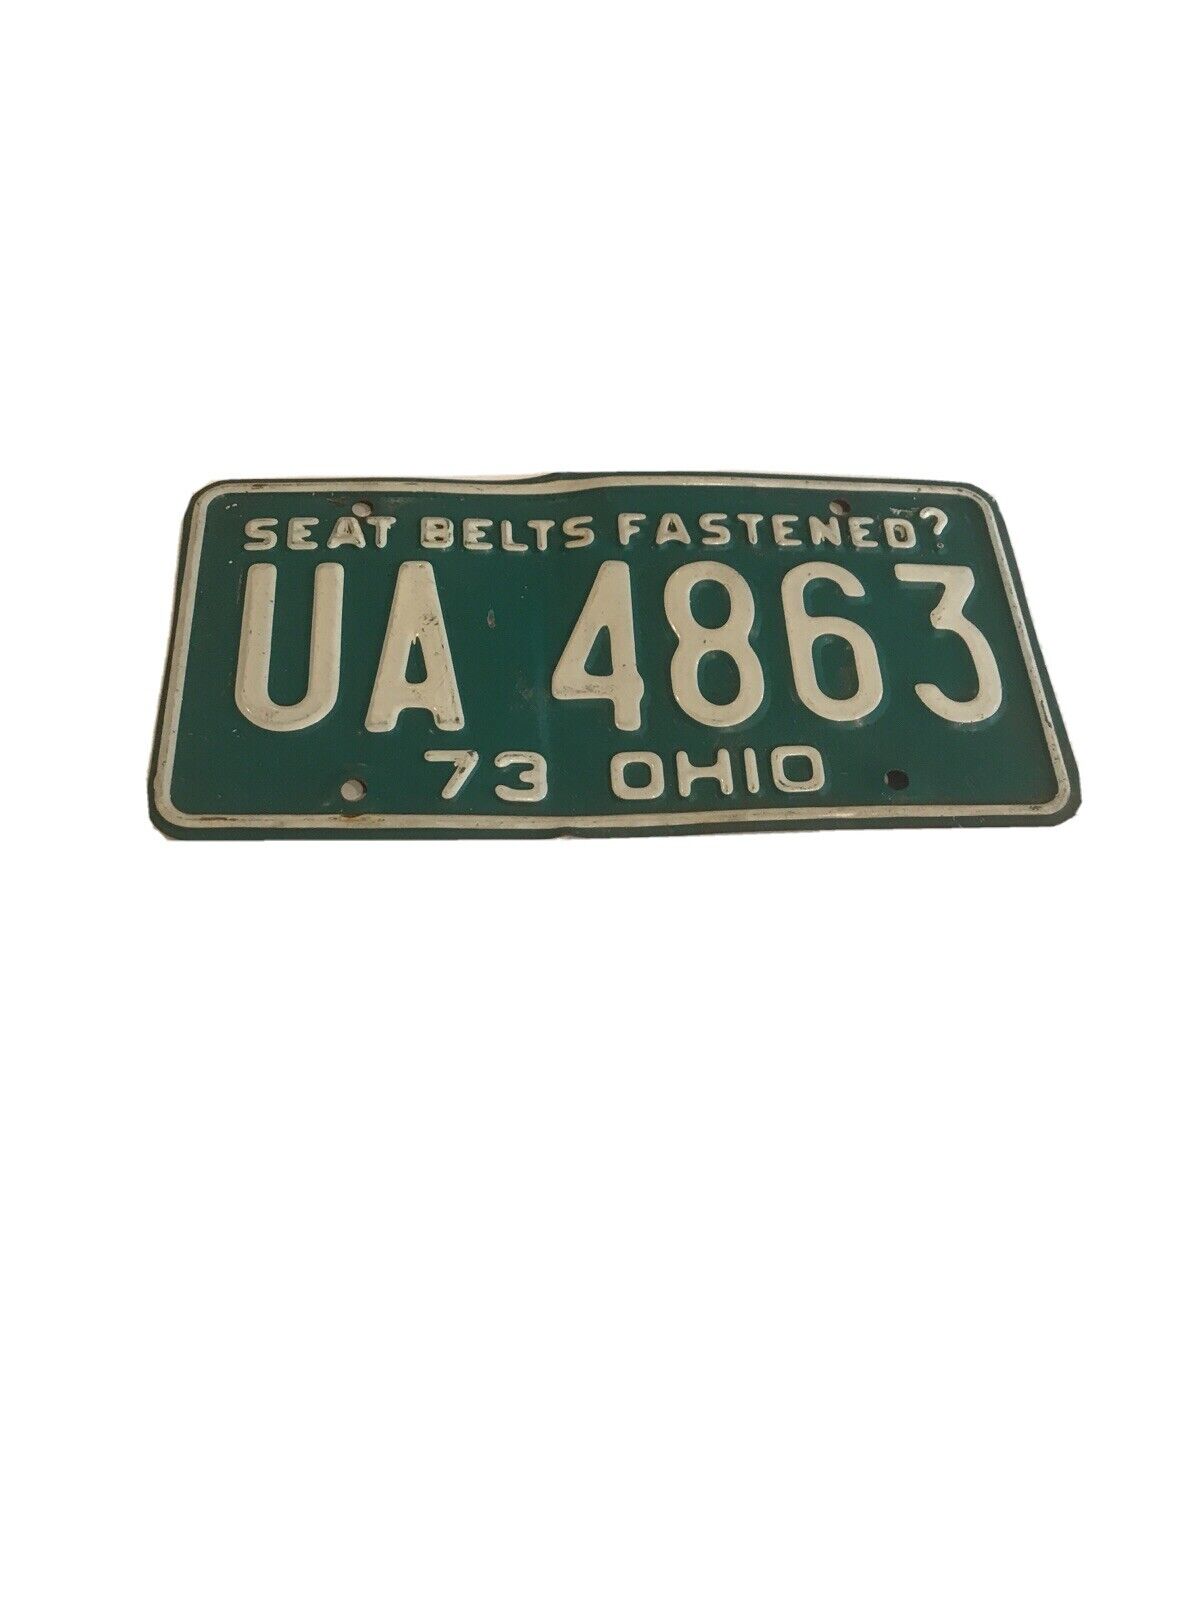 Vintage 1973 Ohio License Plate UA 4863